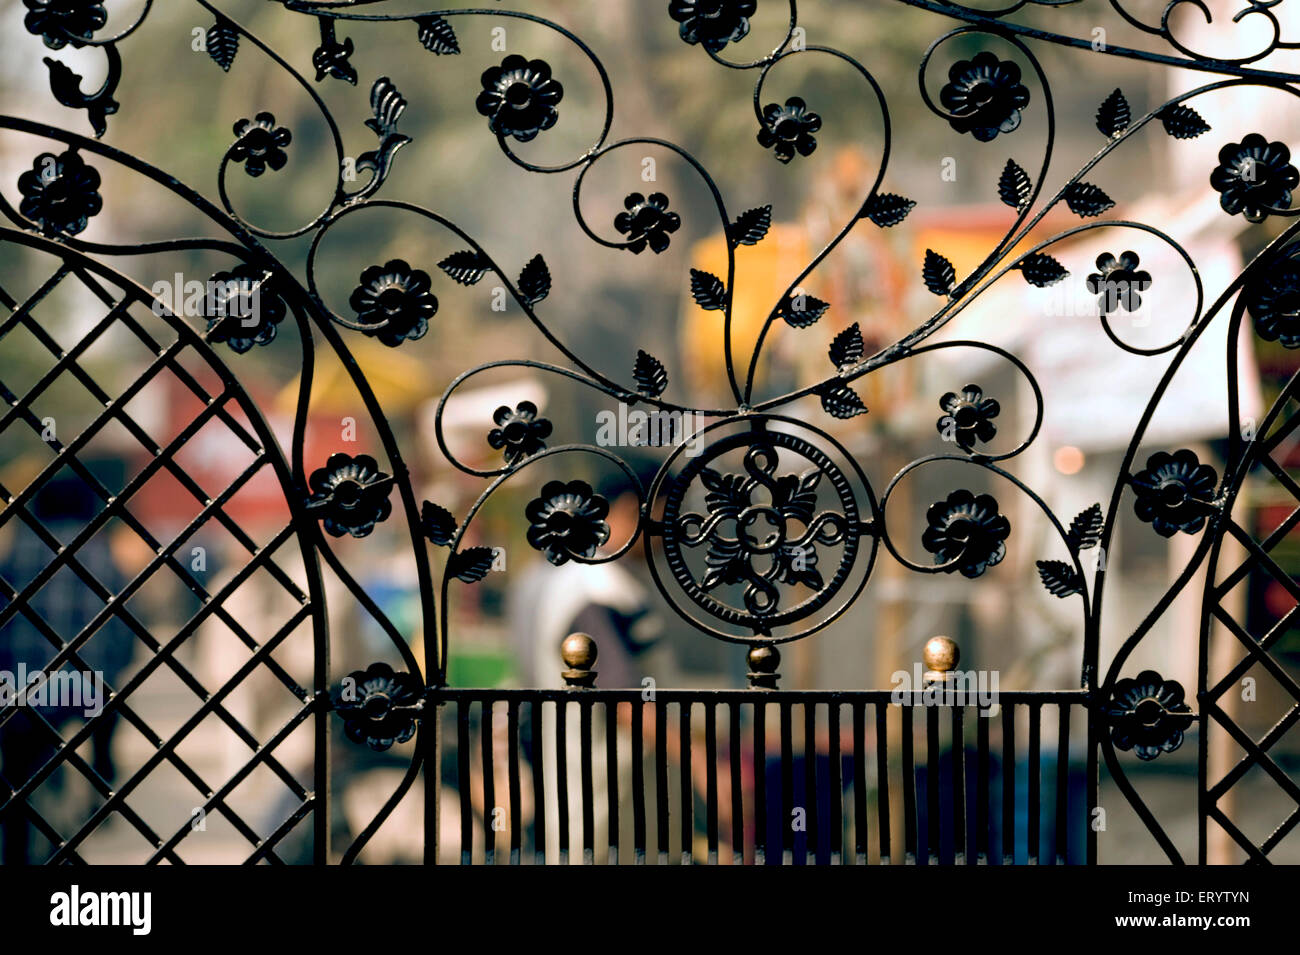 Cancello decorativo in ferro battuto, calcutta, kolkata, Bengala Occidentale, India, asia Foto Stock